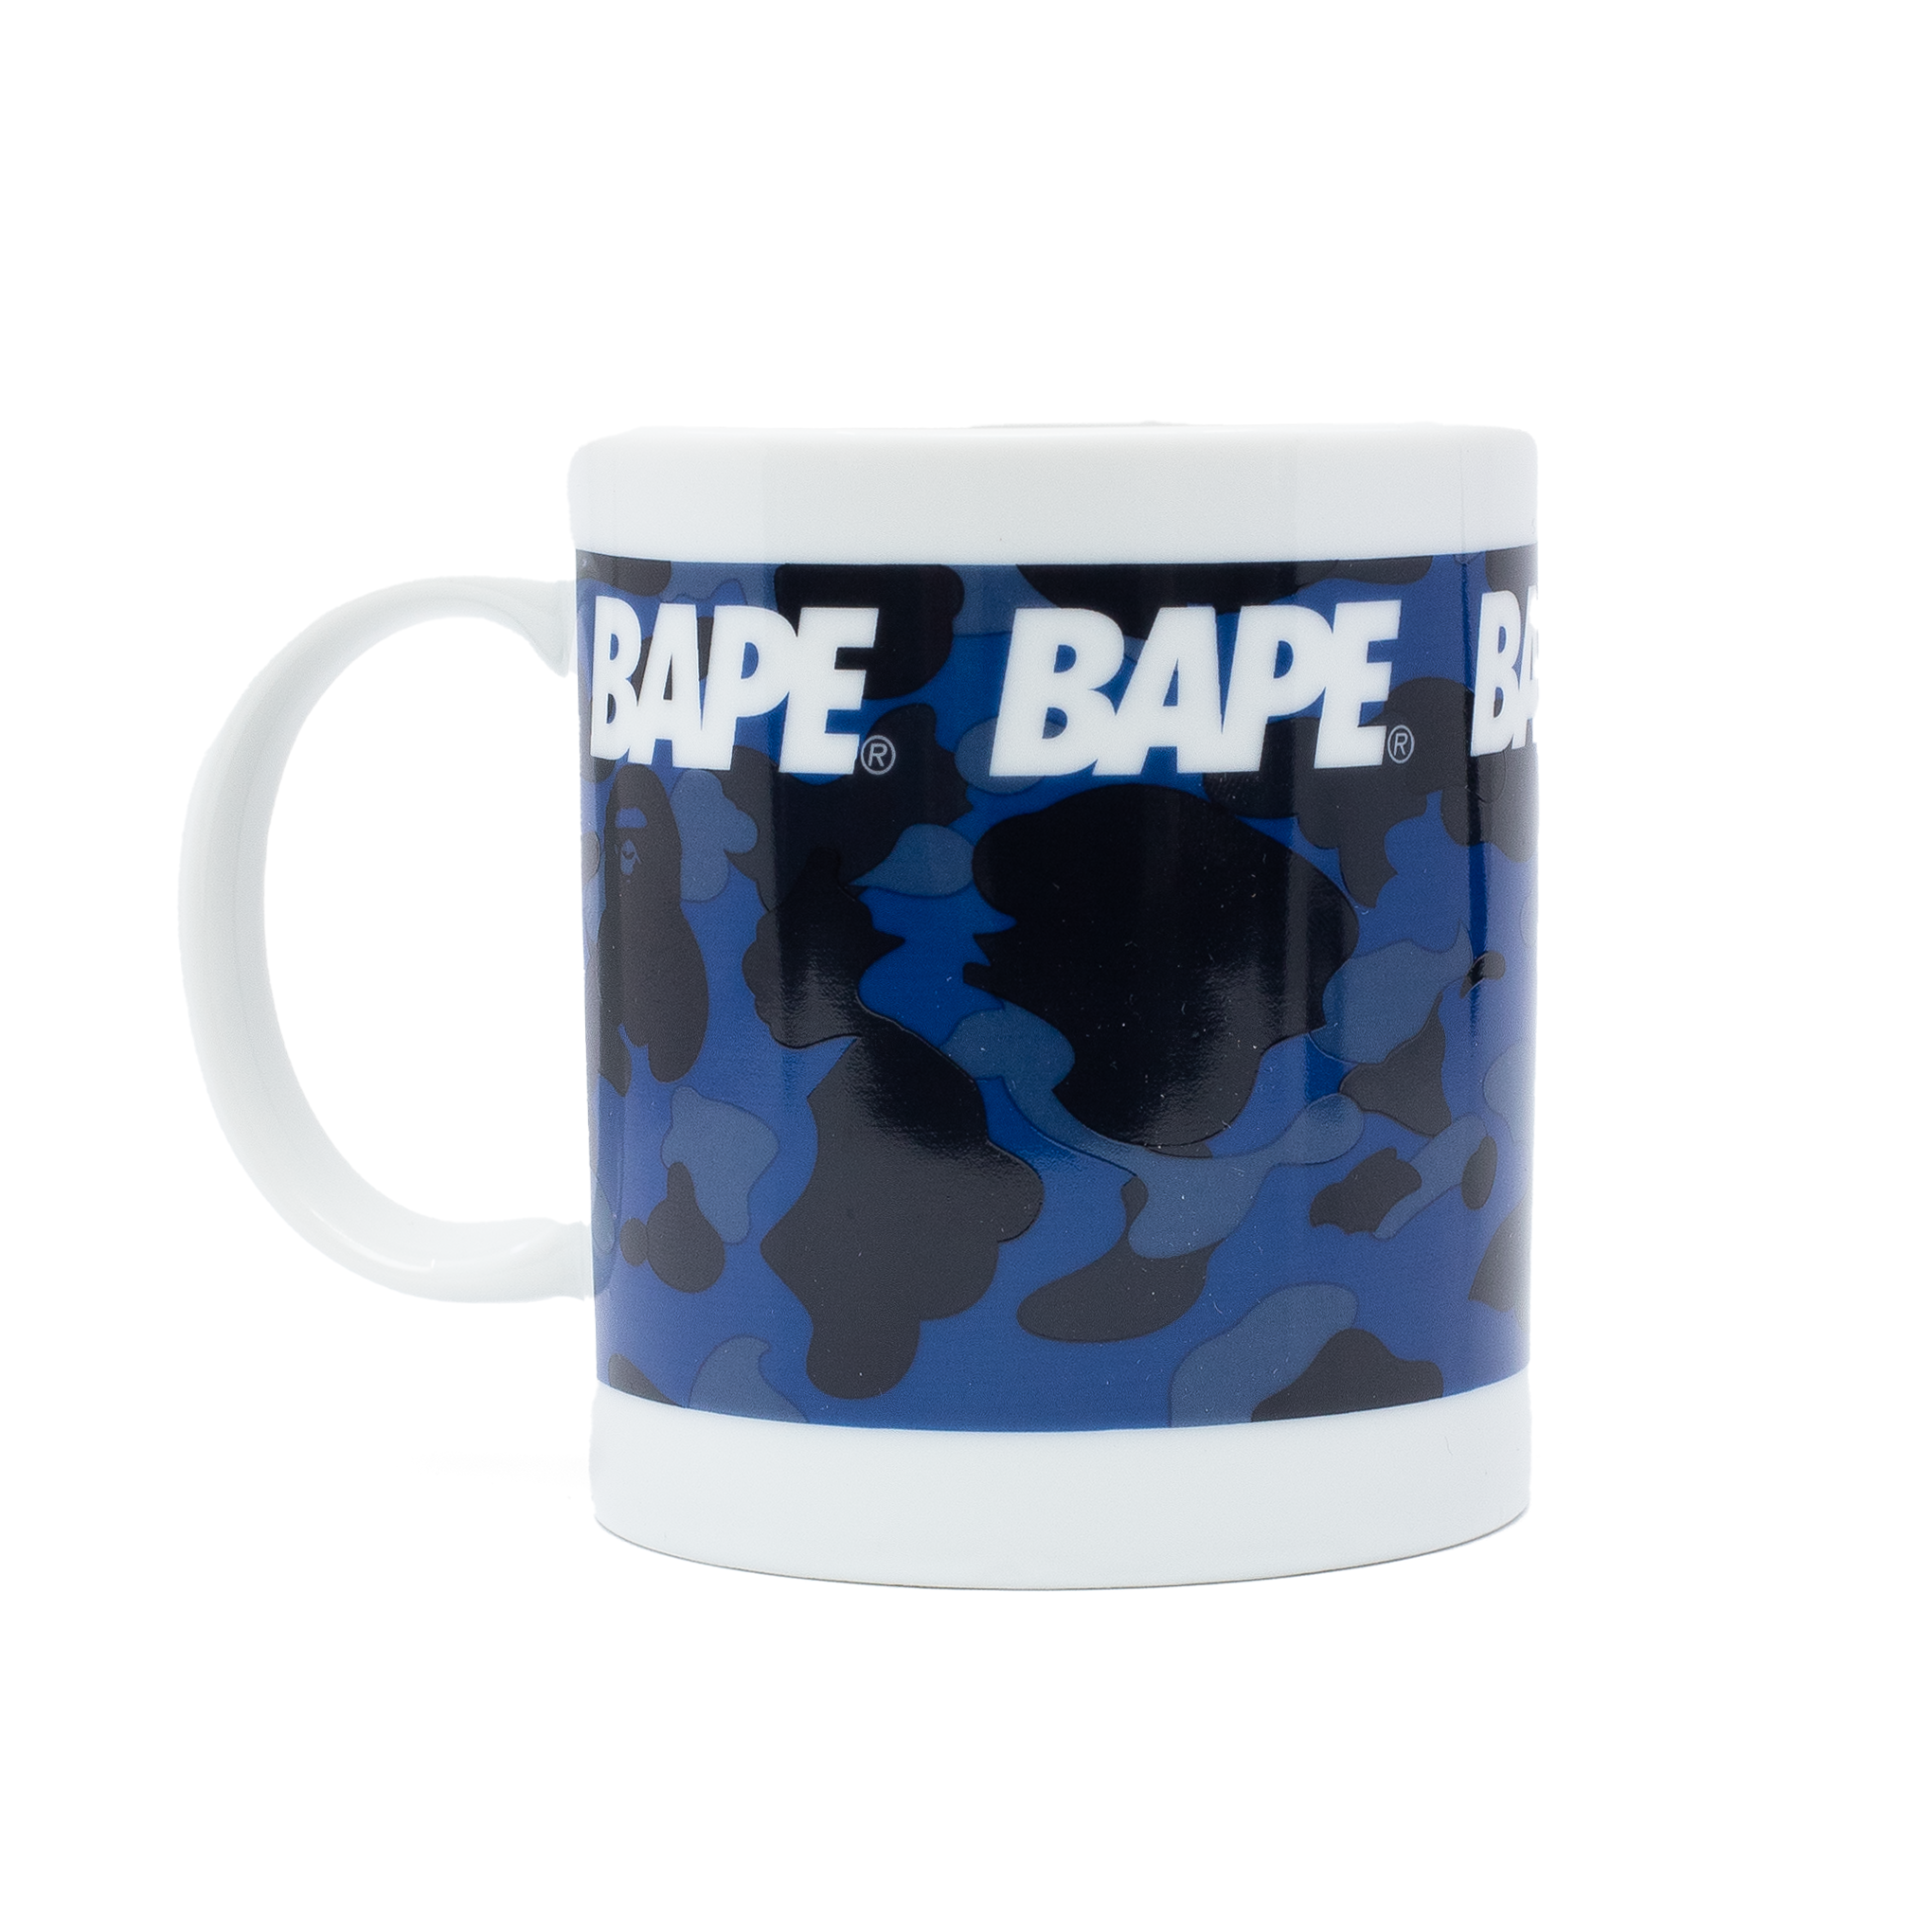 BAPE 彩色迷彩马克杯 蓝色